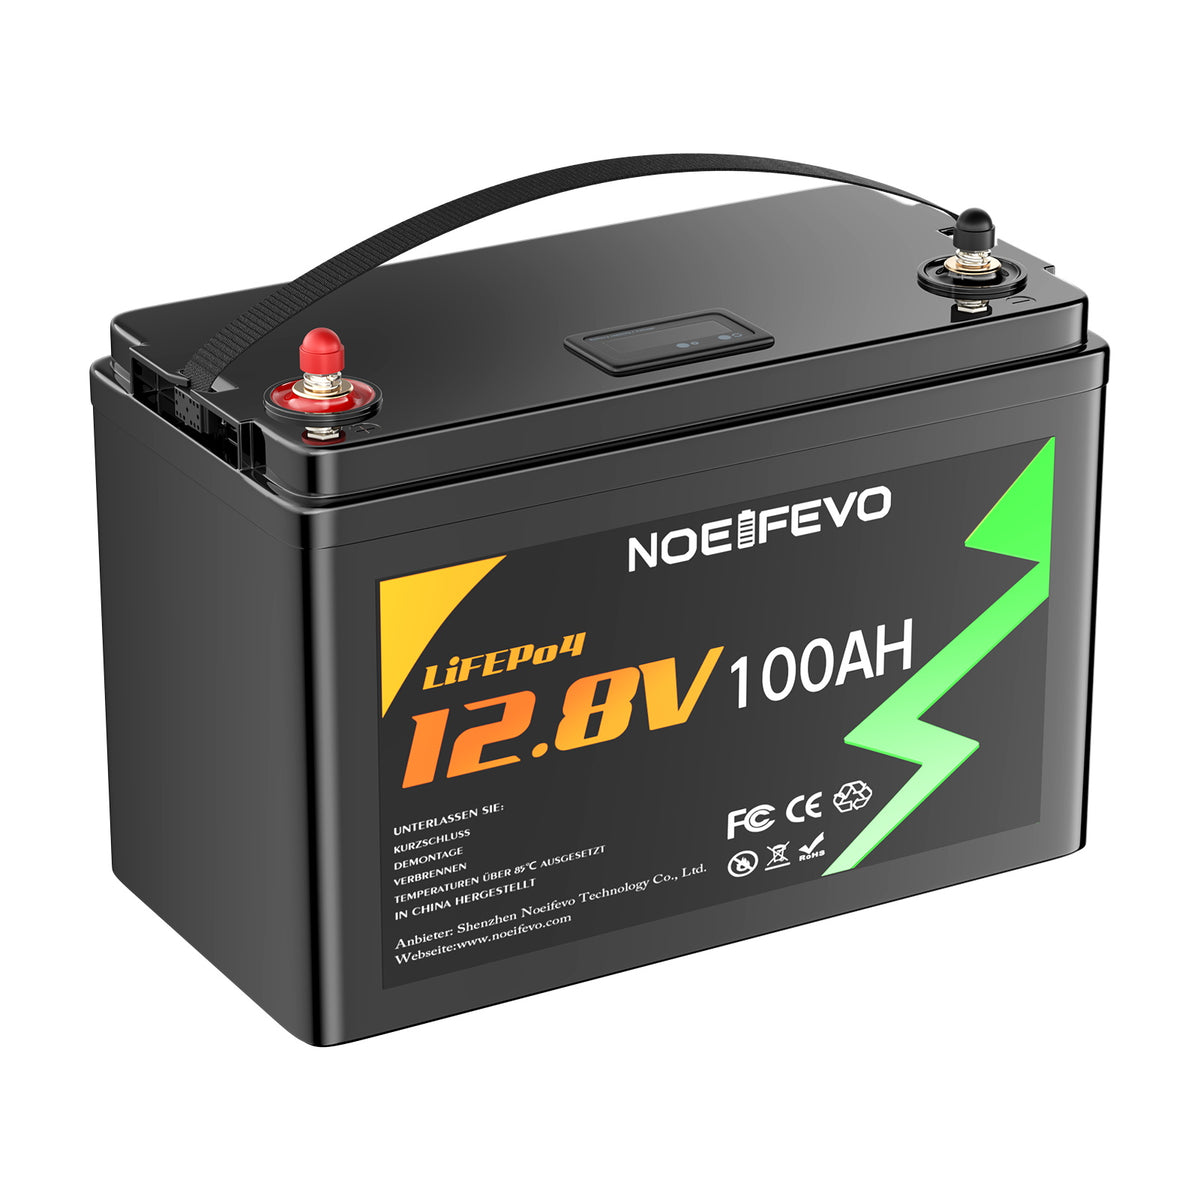 NOEIFEVO D4870 51.2V 70AH Lithium de phosphate fer batterie